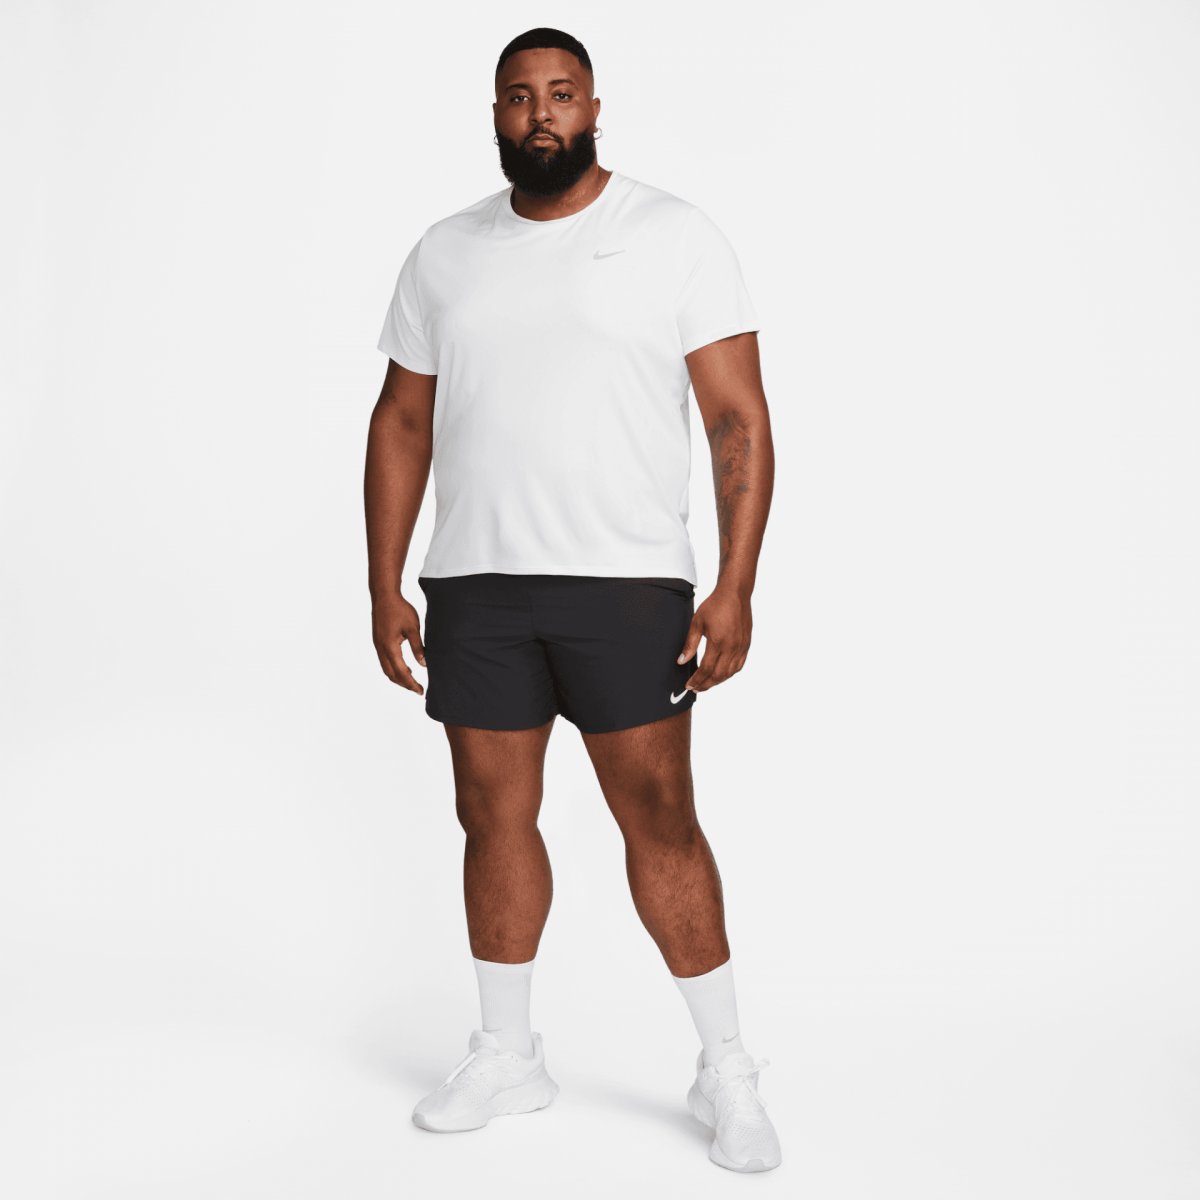 Nike Dri-FIT UV Miler White Men's training tee - Tshirts - Clothes ...